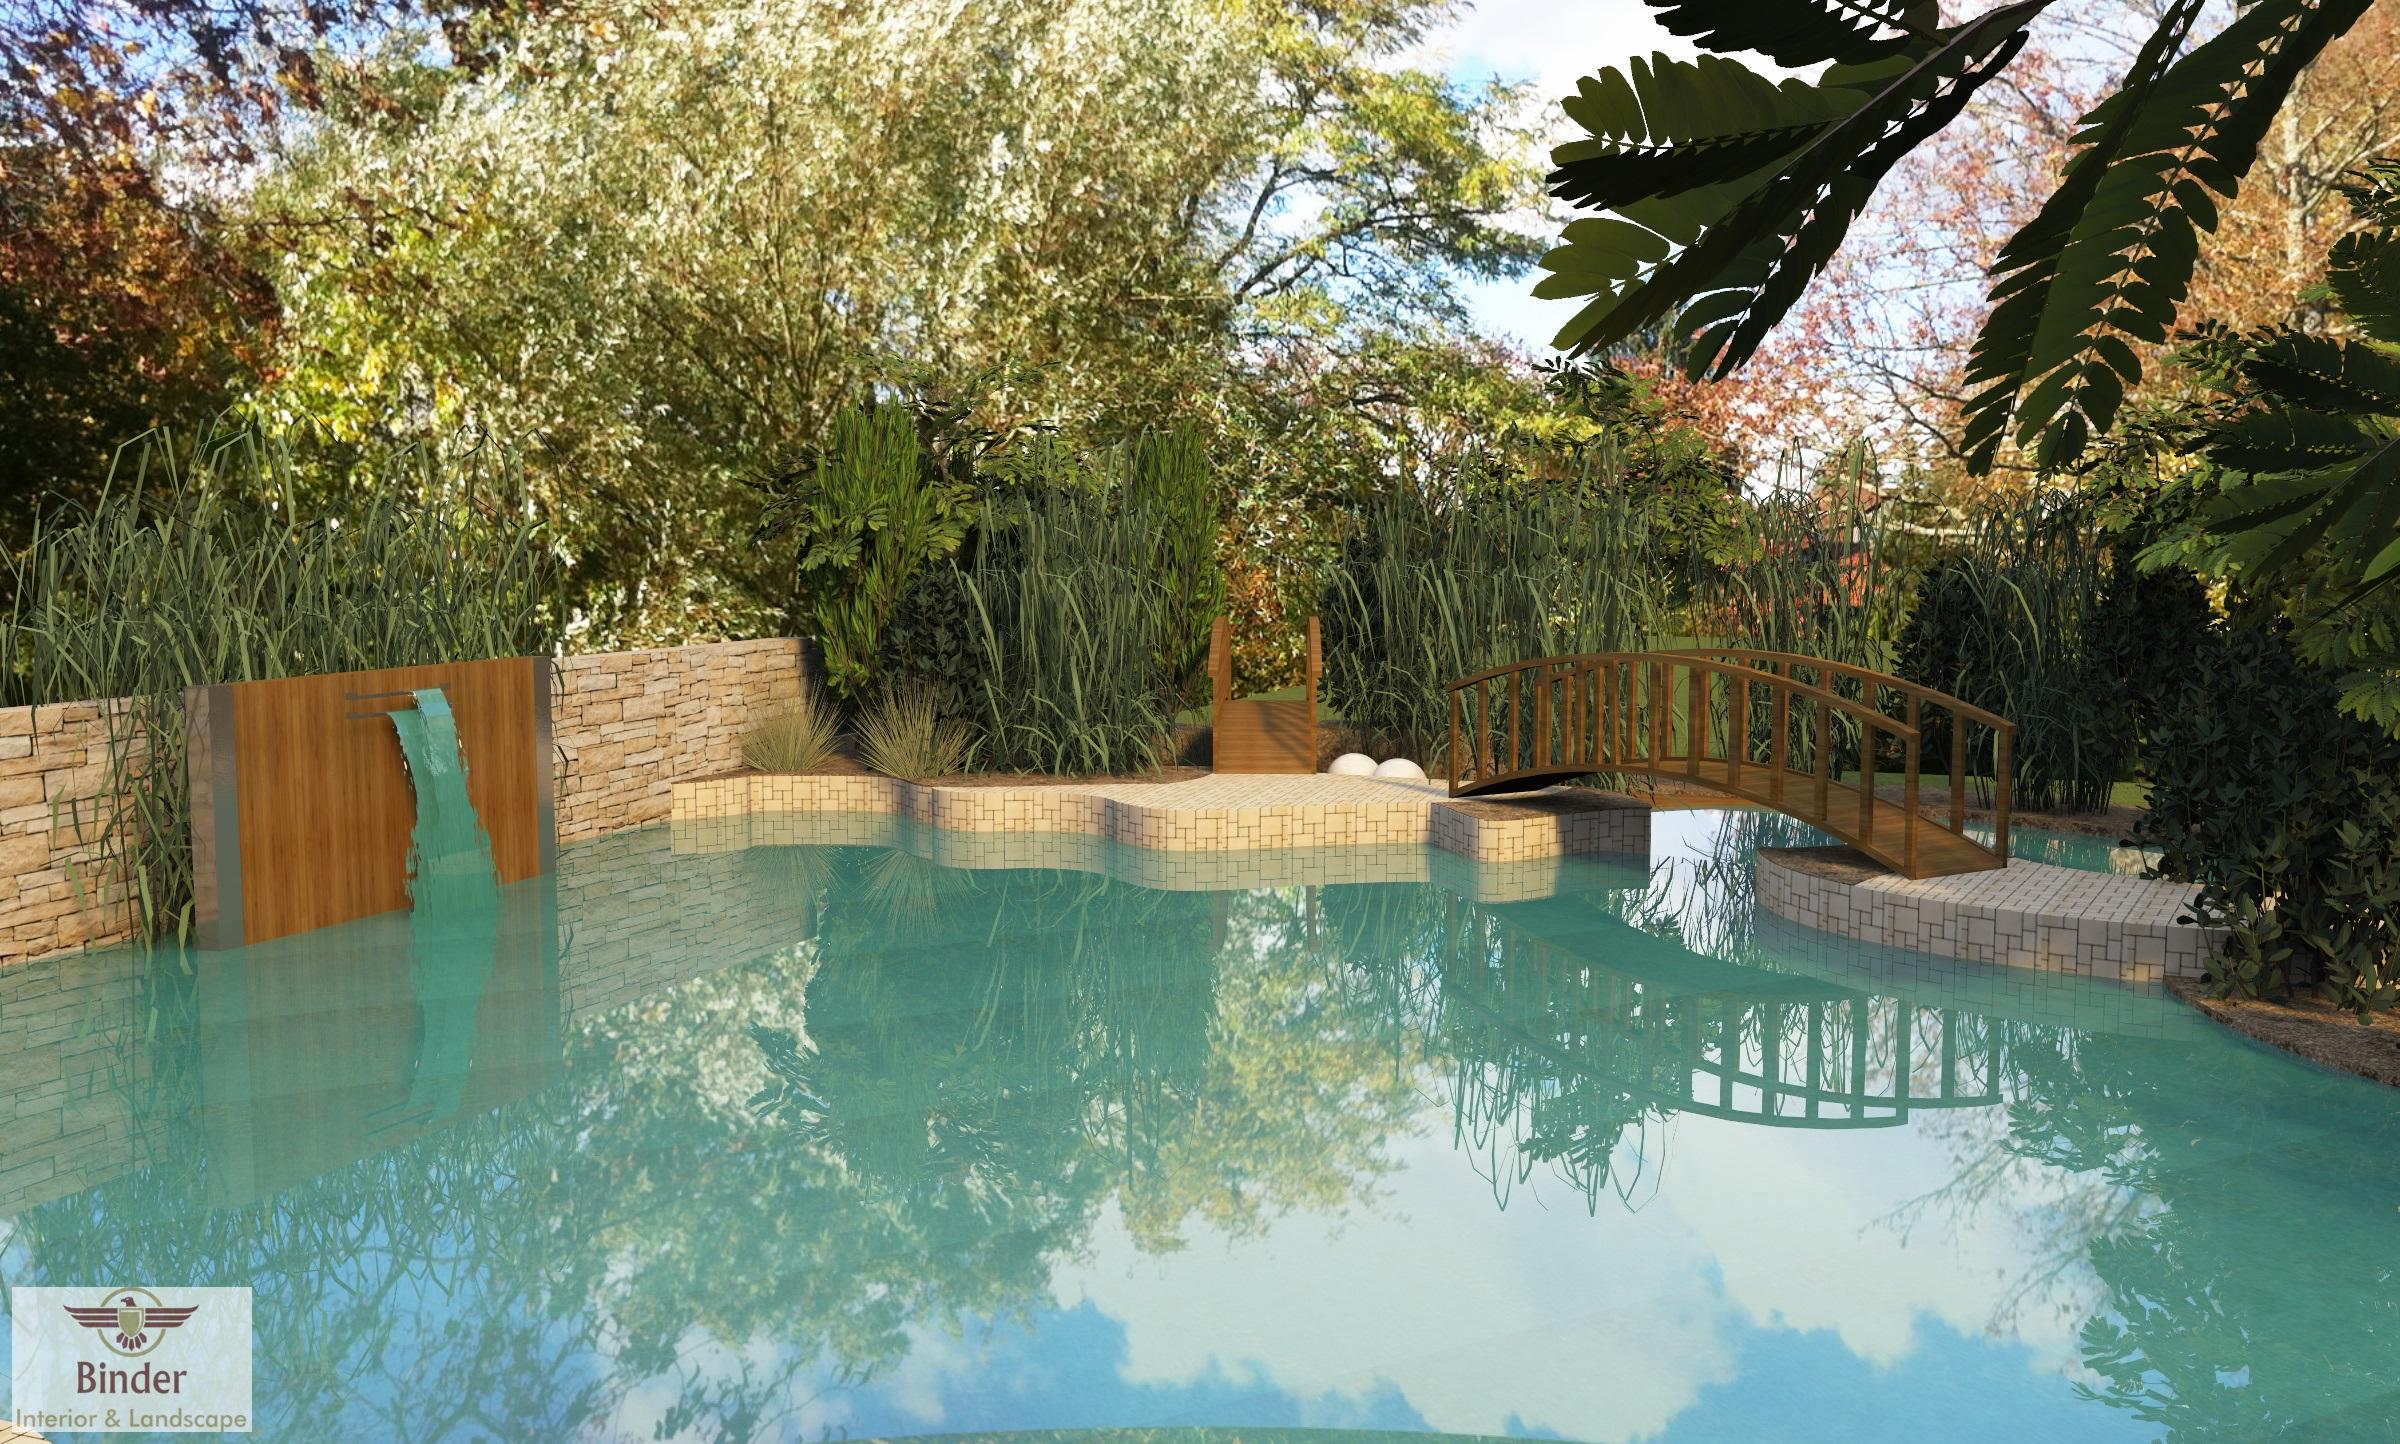 Schwimmteich im Garten - so kann ́s aussehen #pool #gartenteich #schwimmbad ©Binder Interior & Landscape